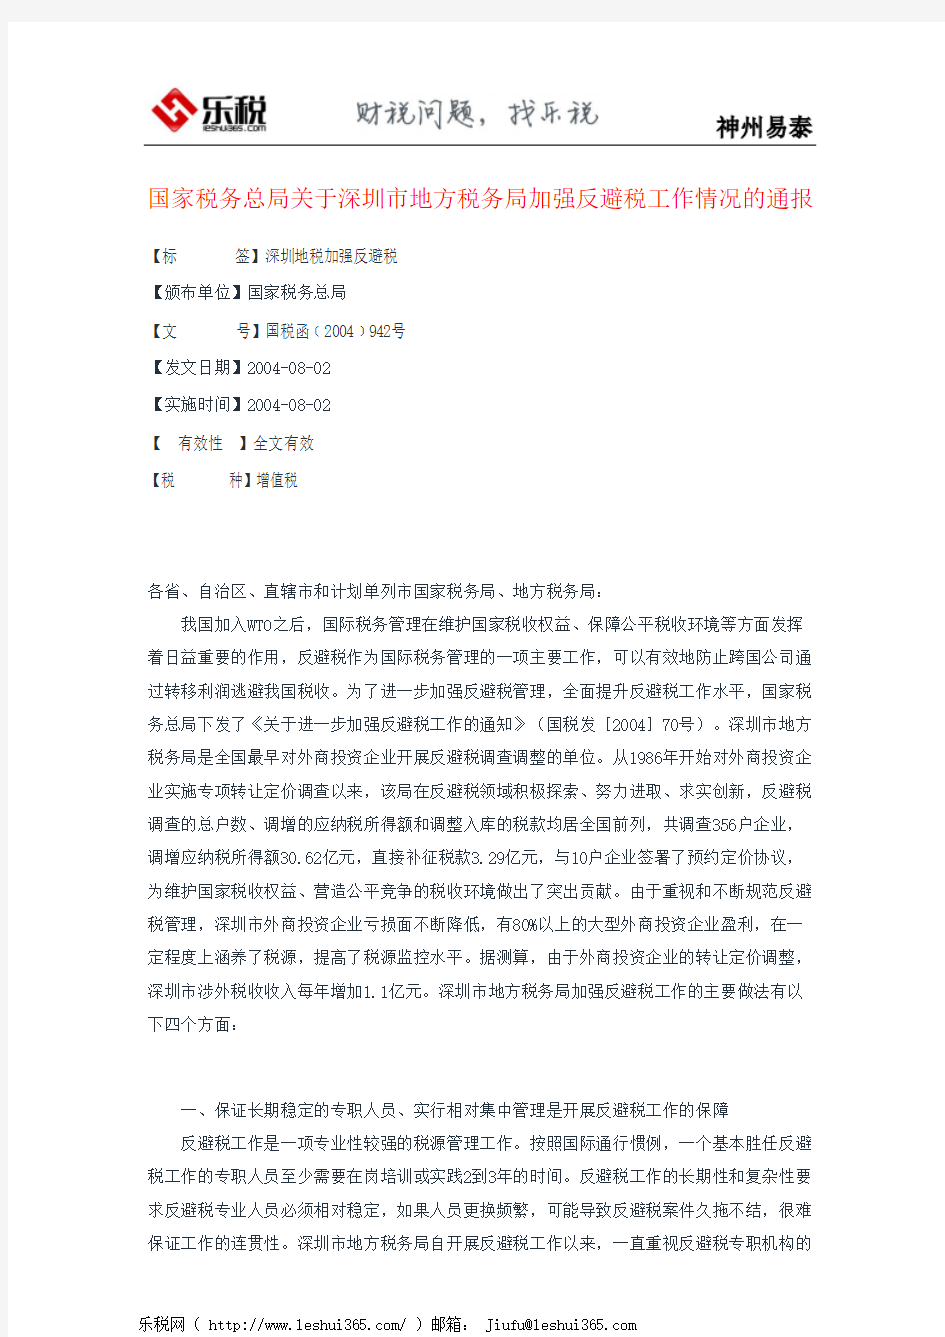 国家税务总局关于深圳市地方税务局加强反避税工作情况的通报